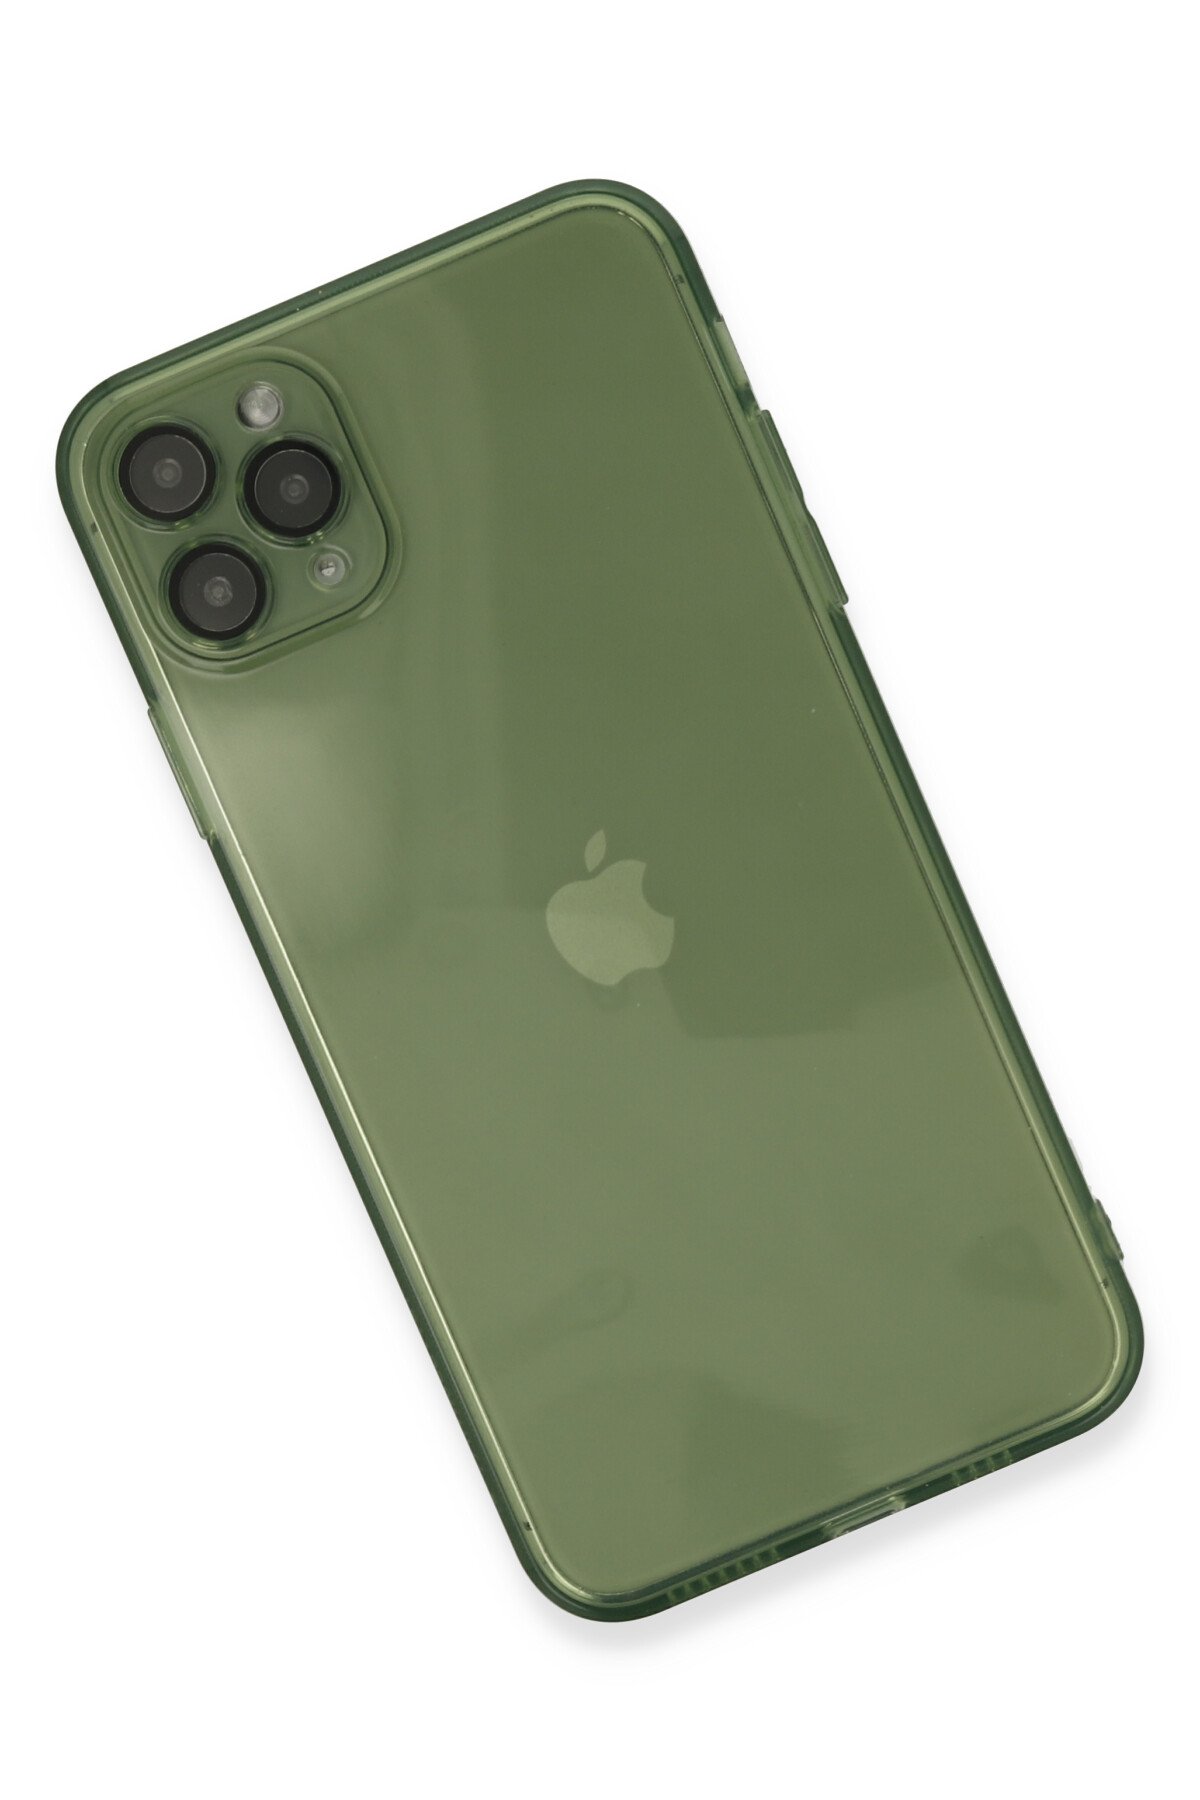 Newface iPhone 11 Pro Max Kılıf Palm Buzlu Kamera Sürgülü Silikon - Lacivert